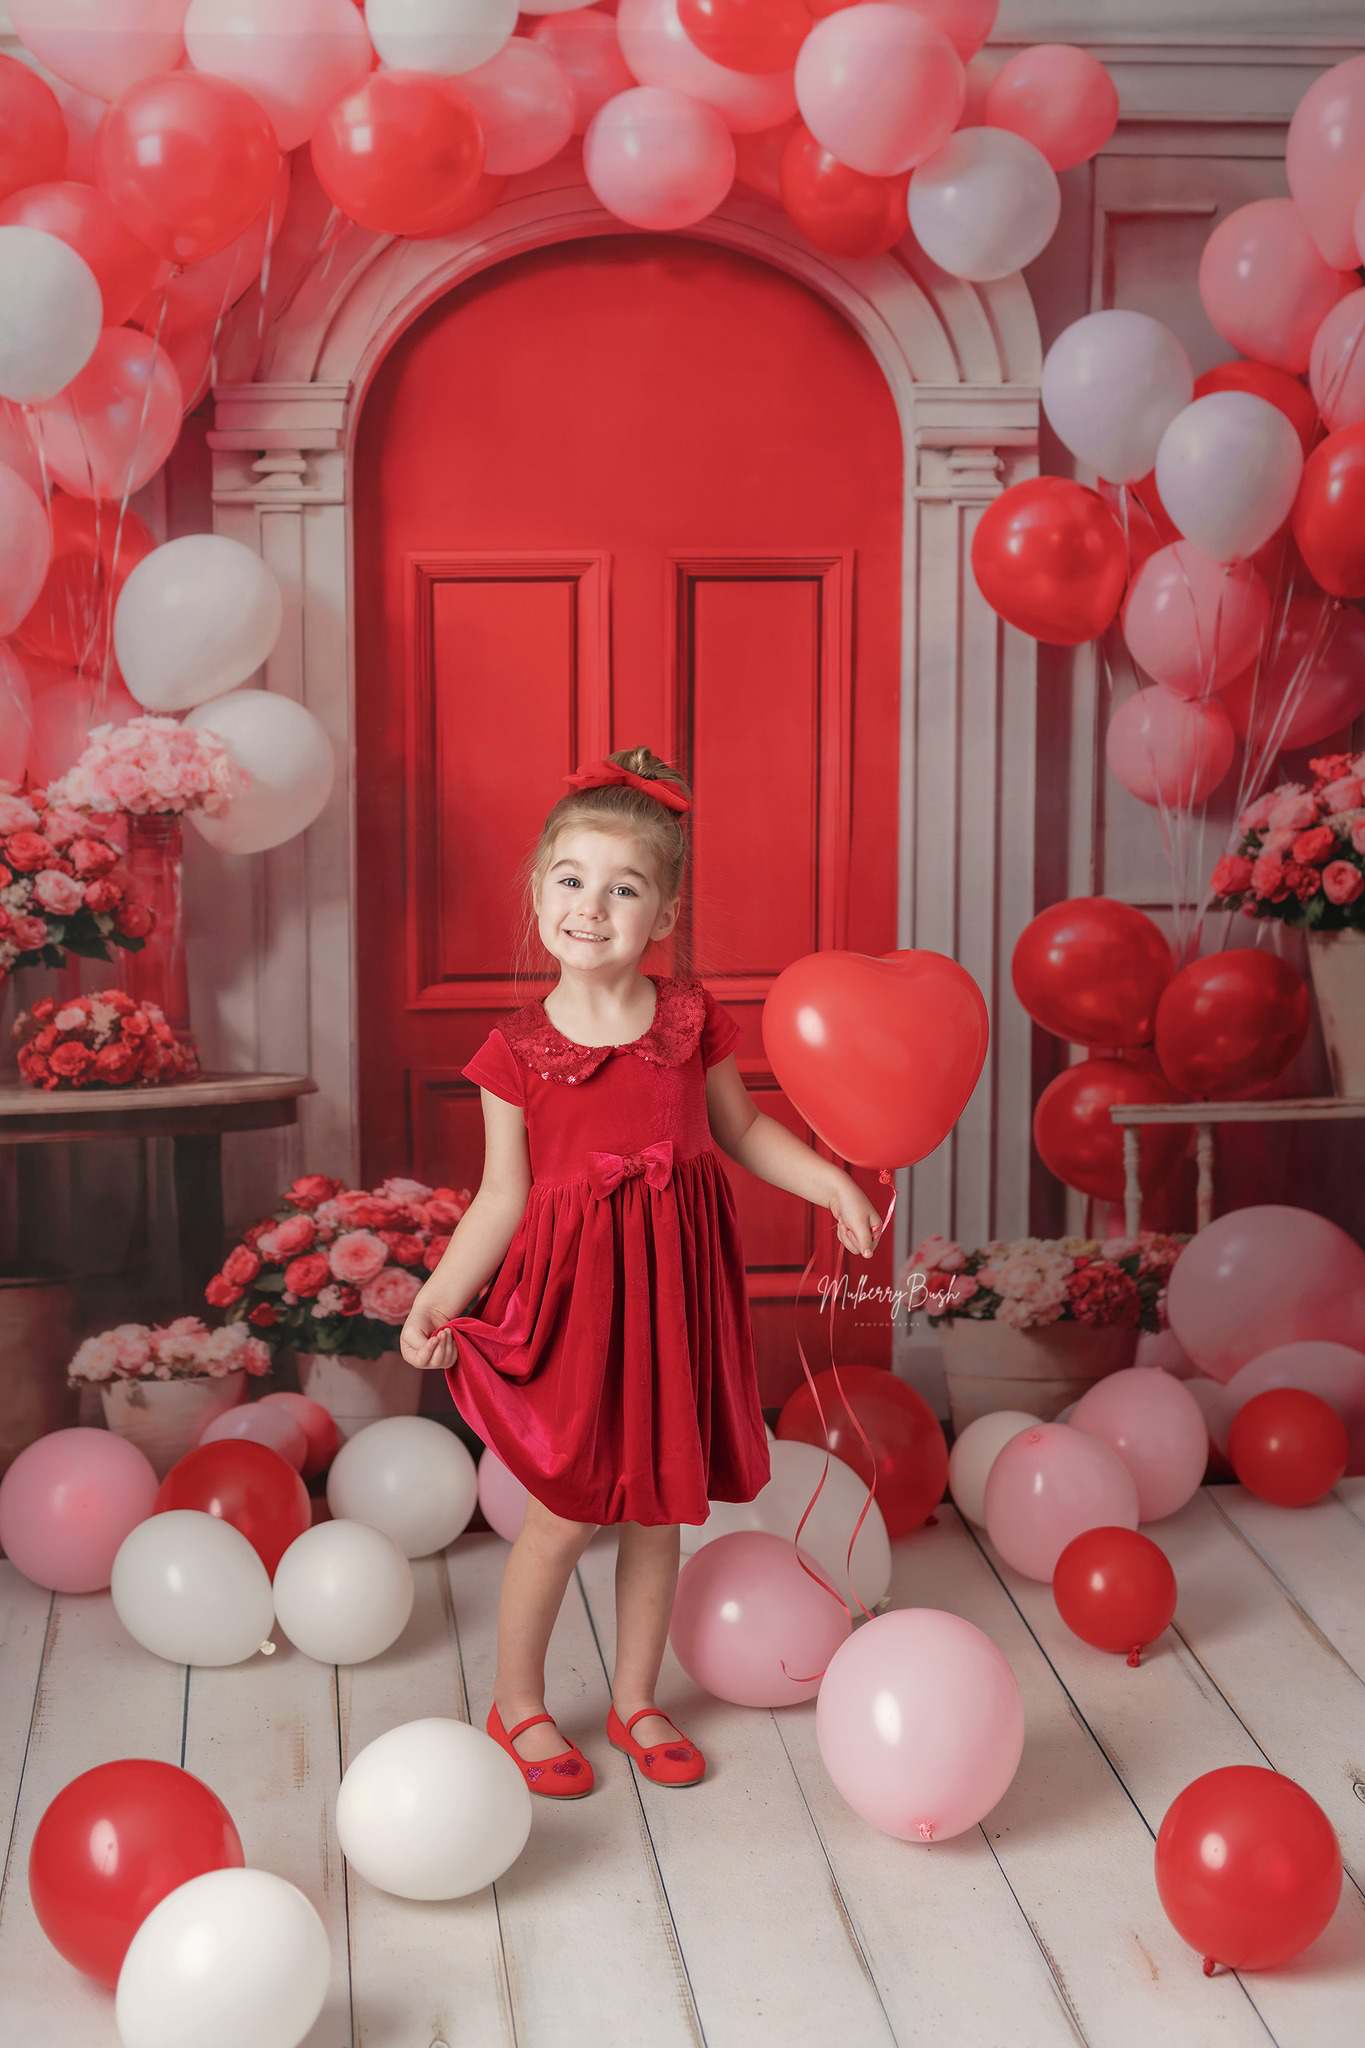 Kate Saint-Valentin Fleurs Ballons Arche Rouge Toile de fond conçue par Chain Photographie